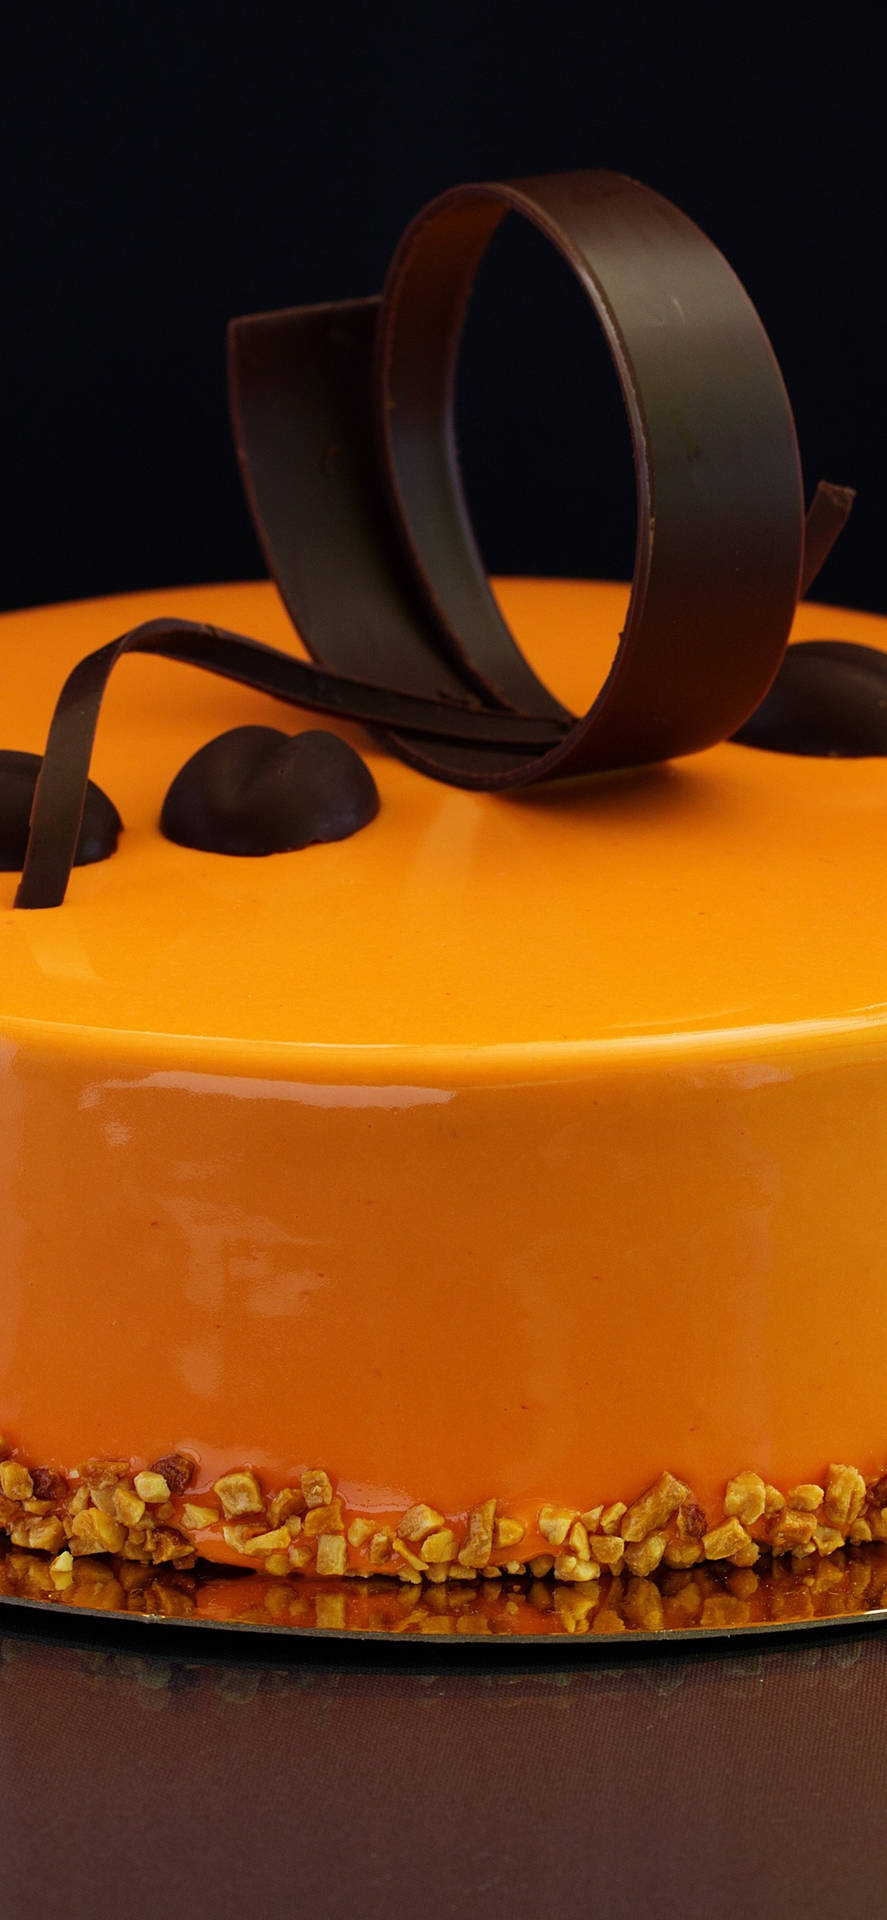 Orange Chocolate Cake Background